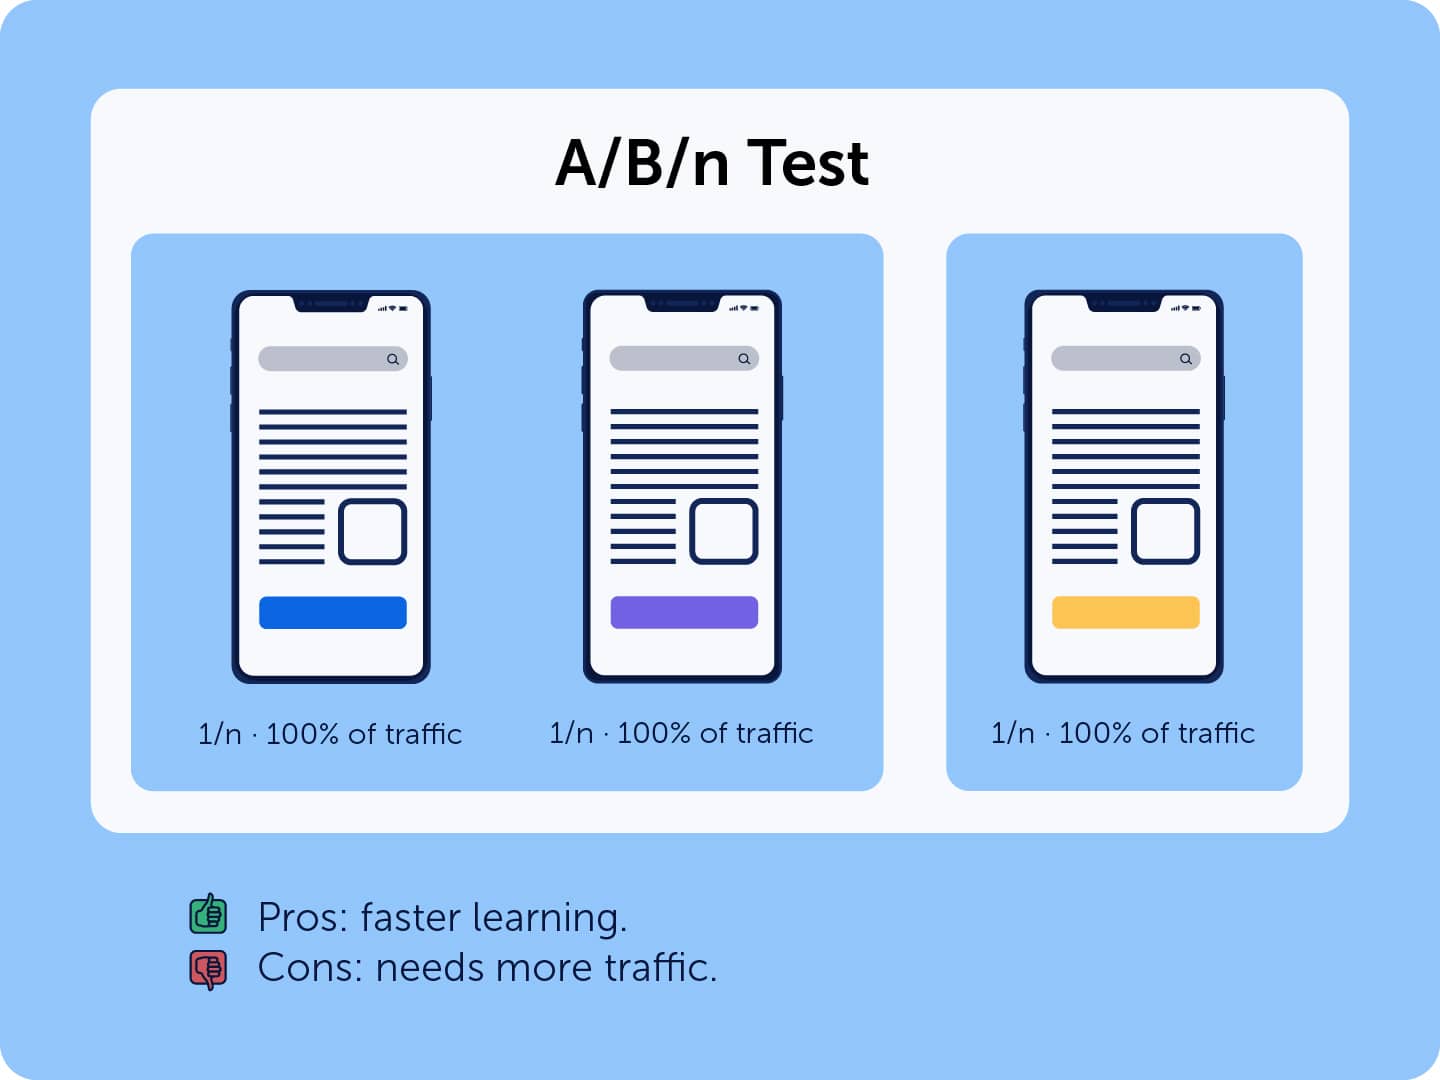 A/B/n test explanation